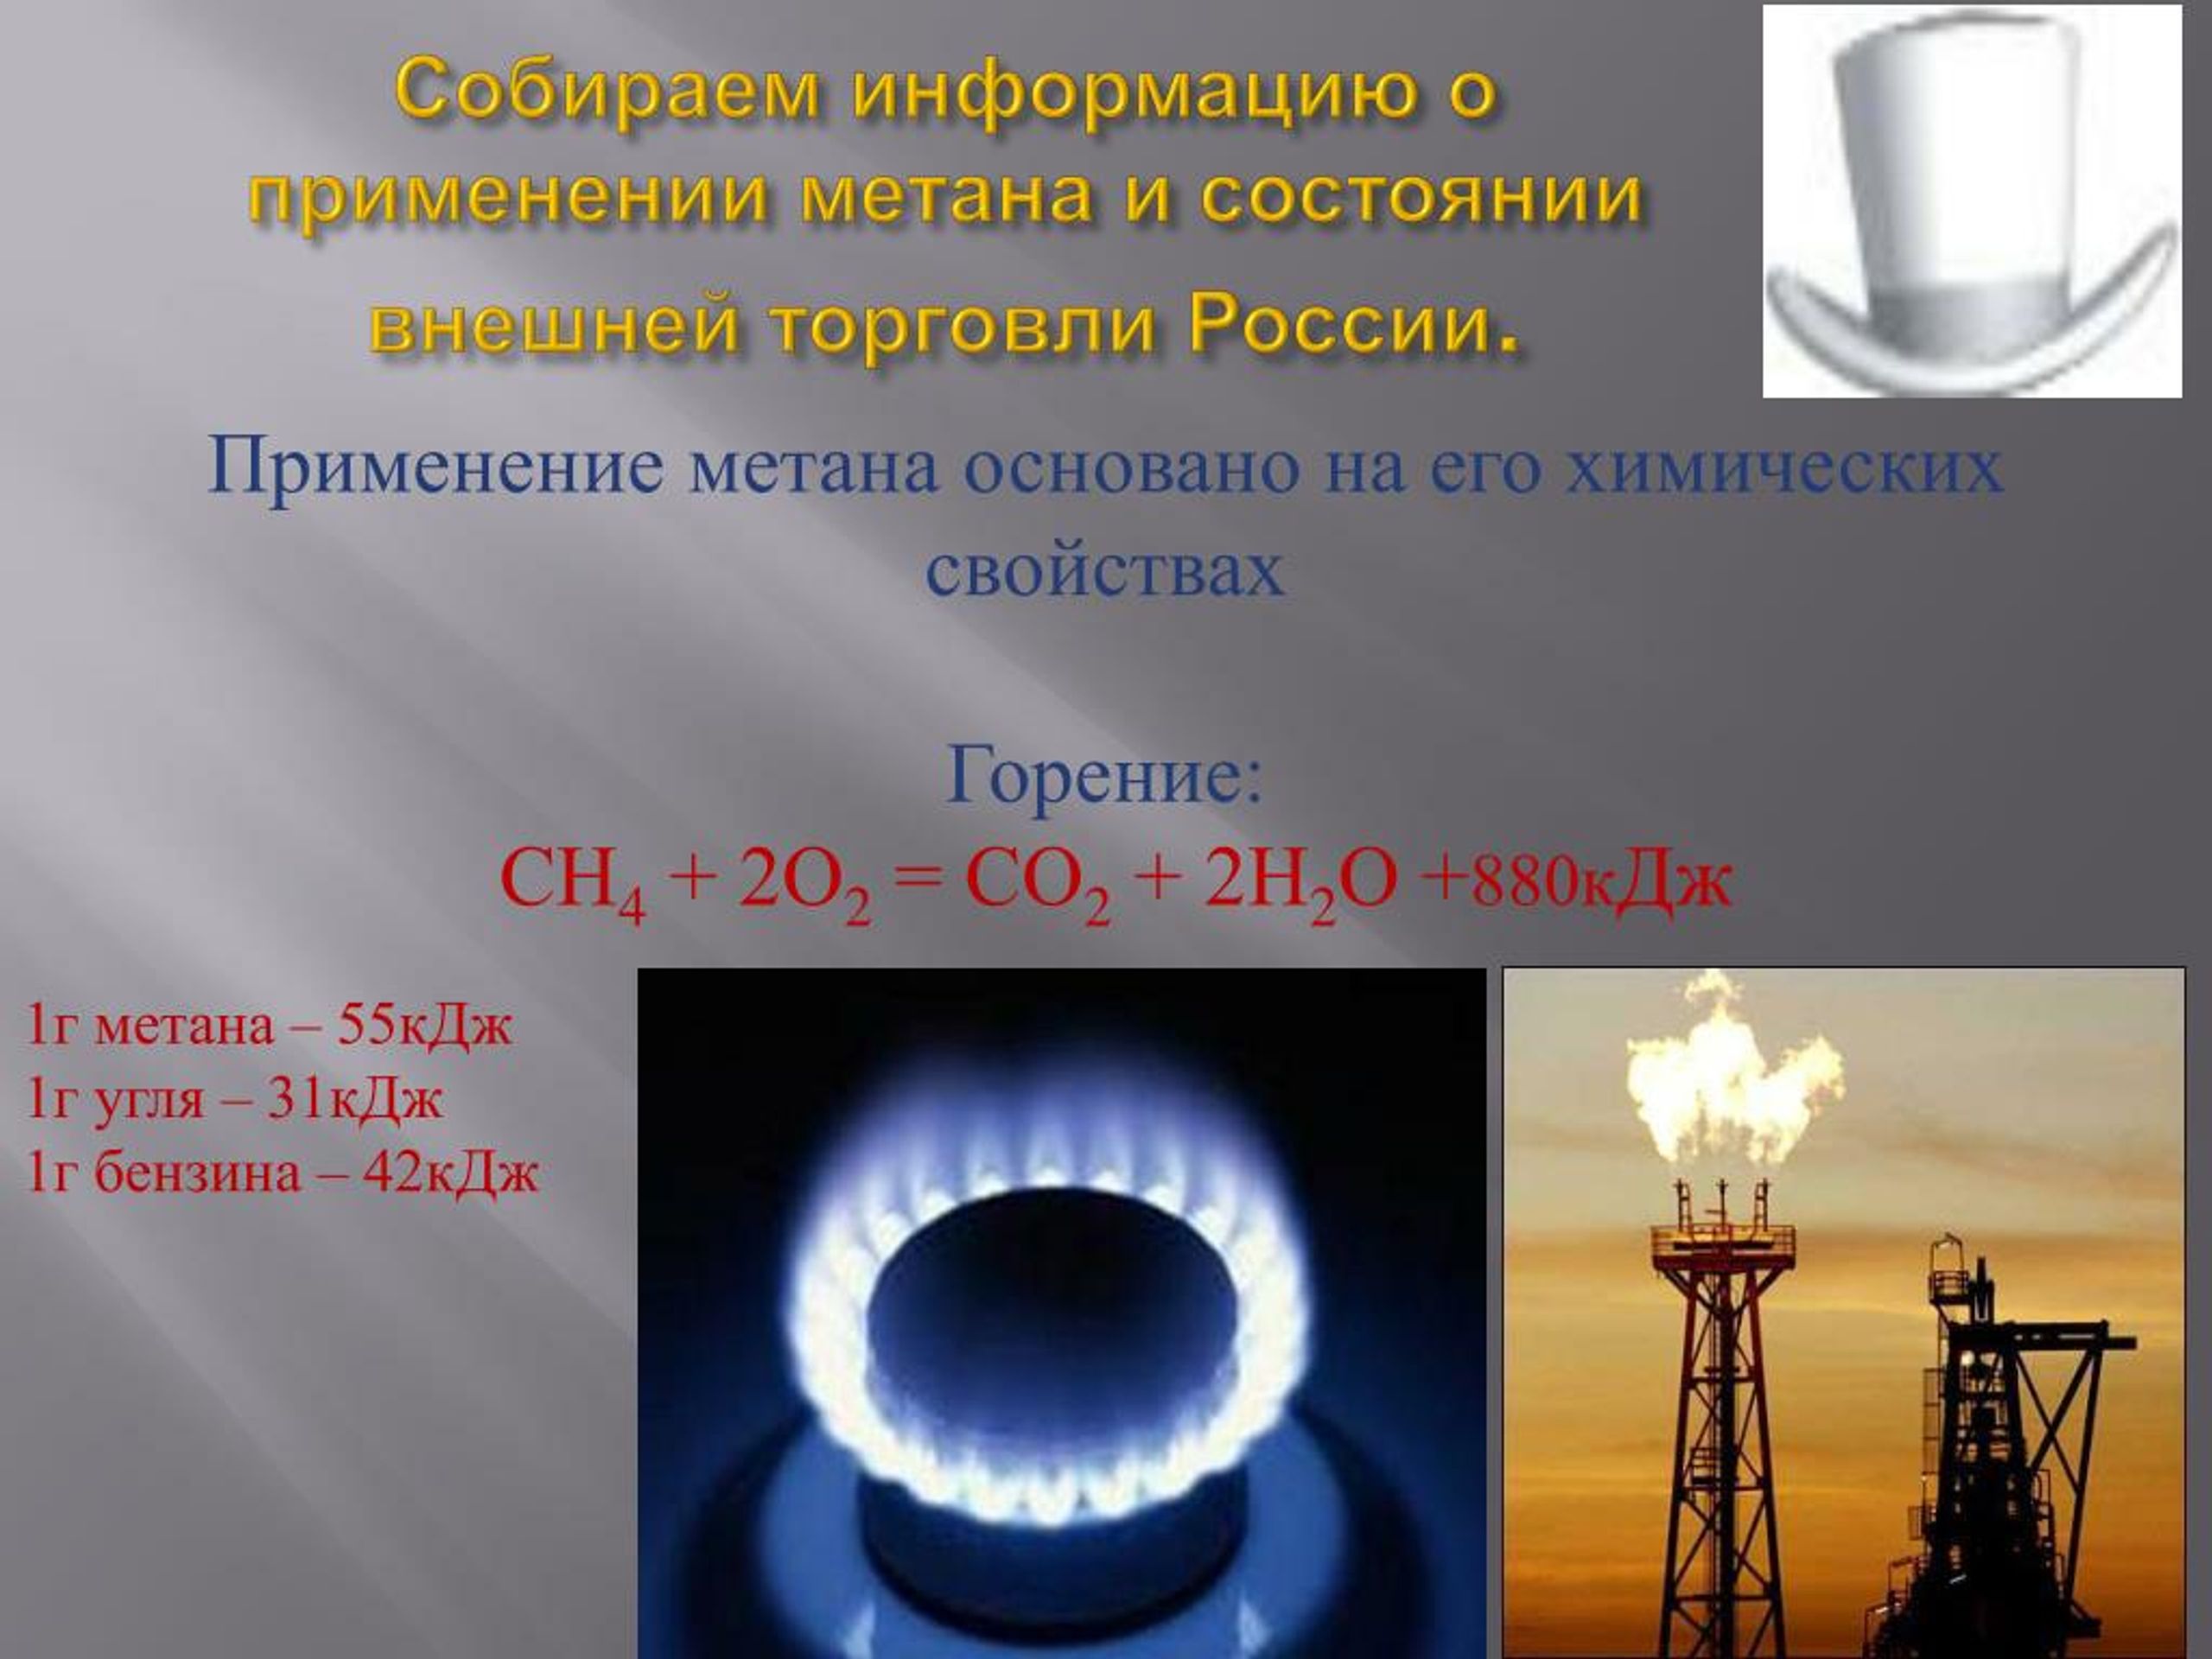 Полное сжигание метана